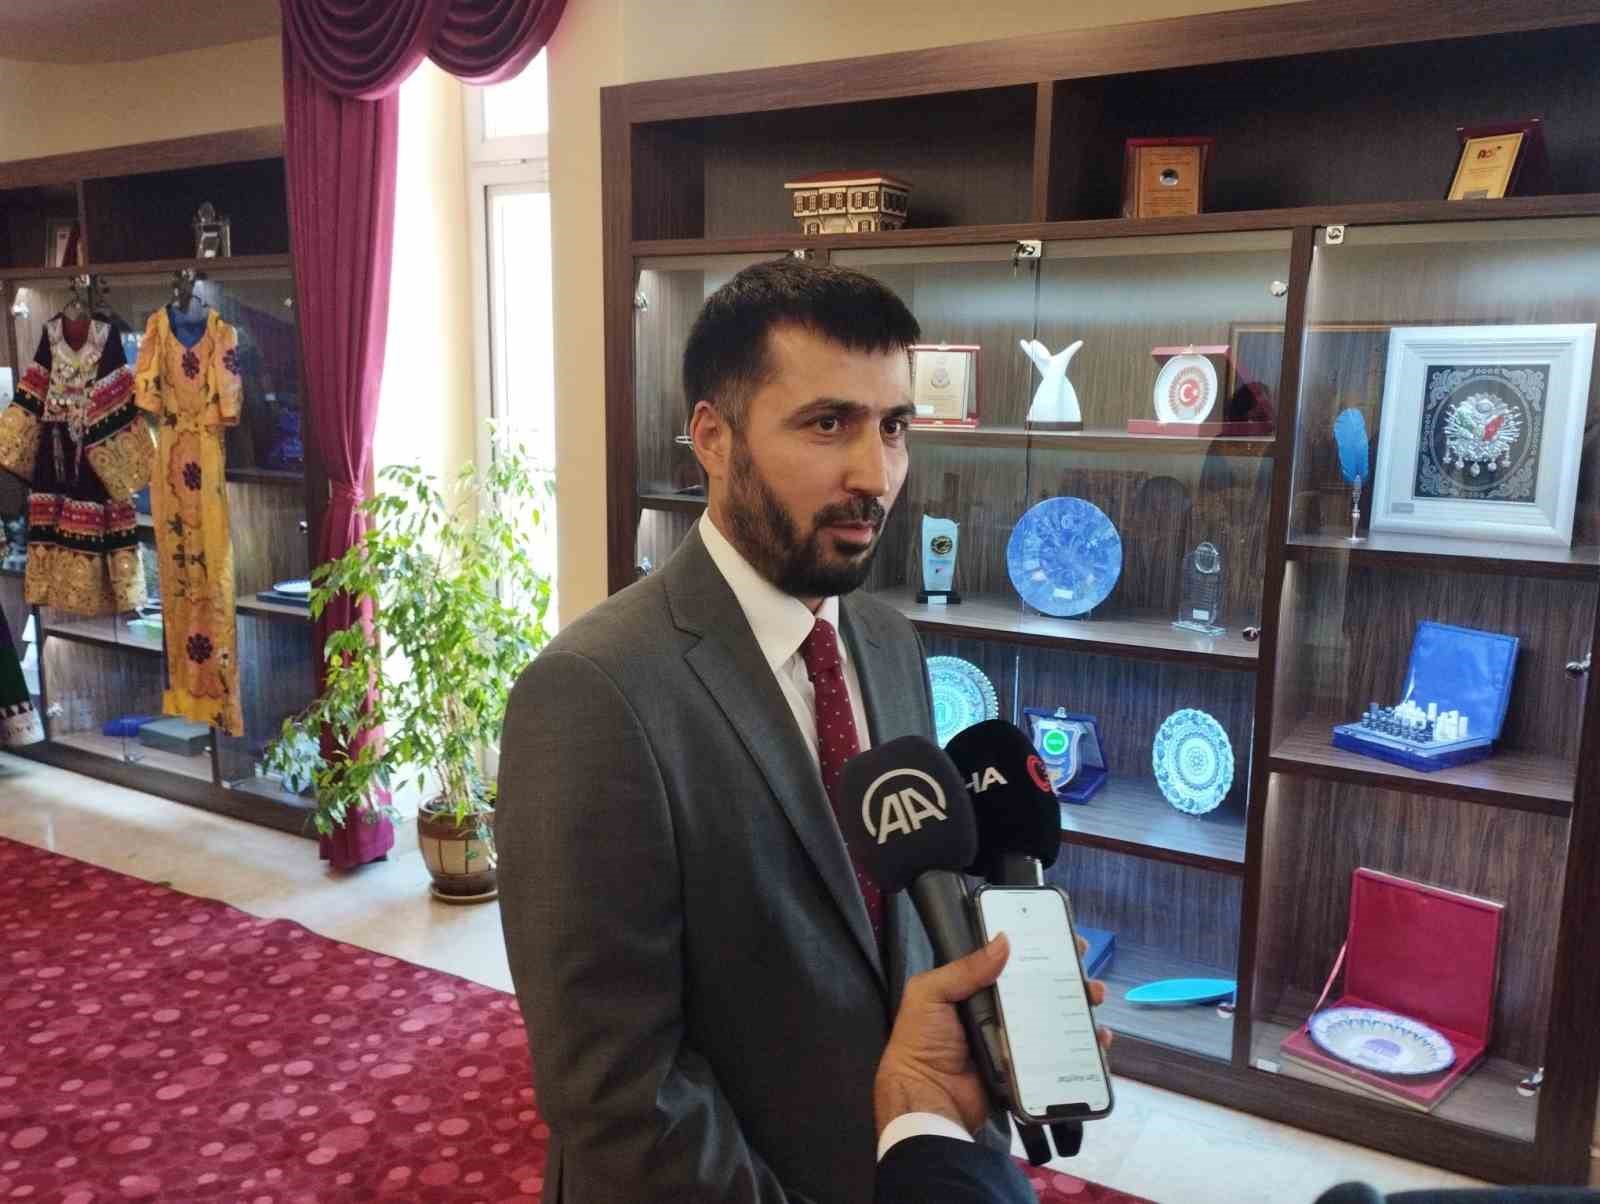 Afganistan’ın Ankara Büyükelçisi Ramin: “Türkiye’de uzun yıllardan beri istikrar ve güçlü bir hükümet var”